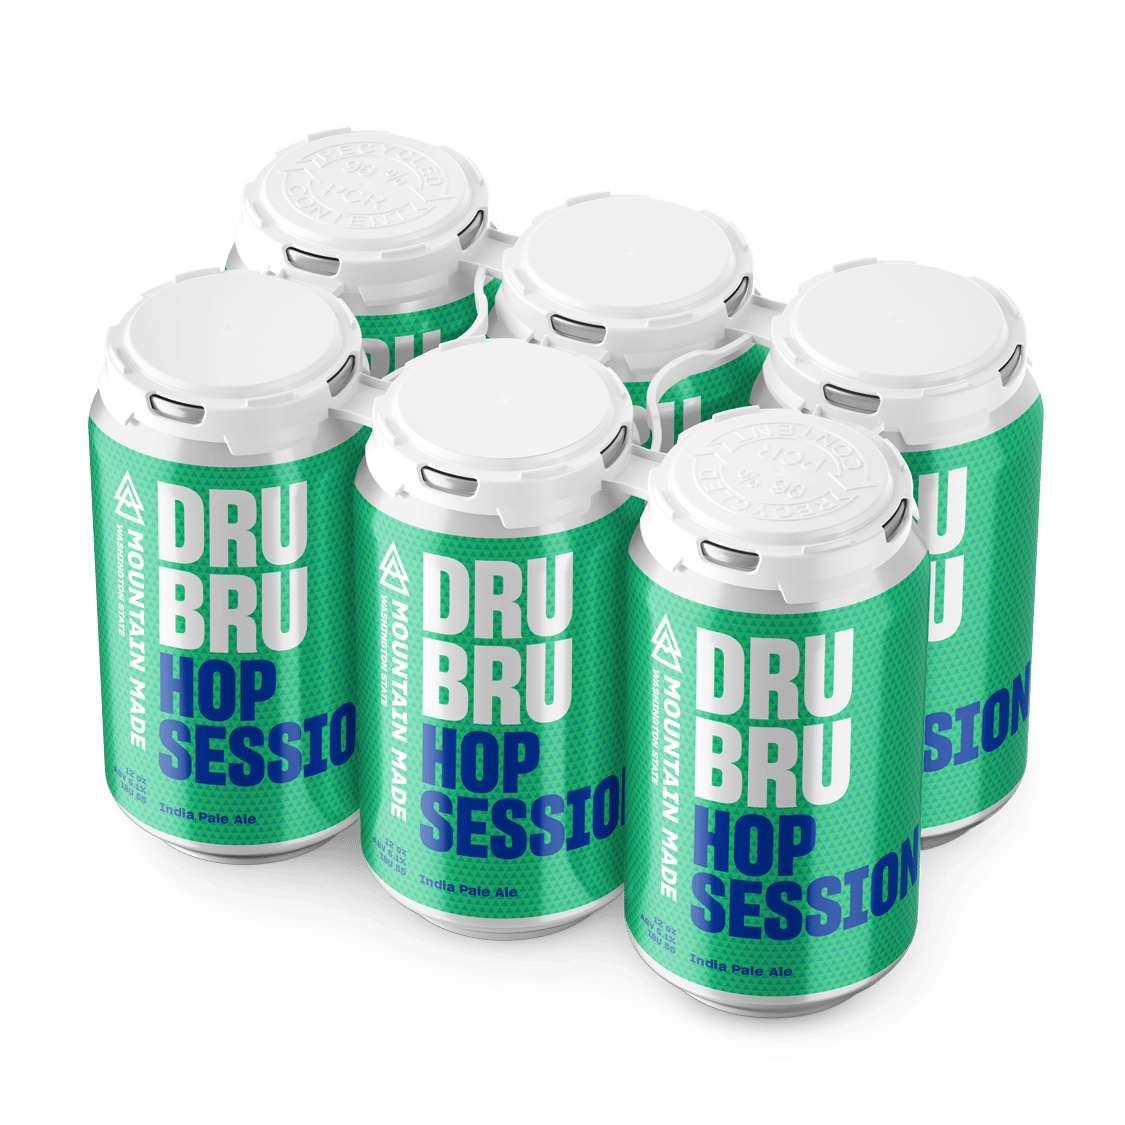 Hop Session- Case (24 cans) - Dru Bru Hop Session- Case (24 cans)